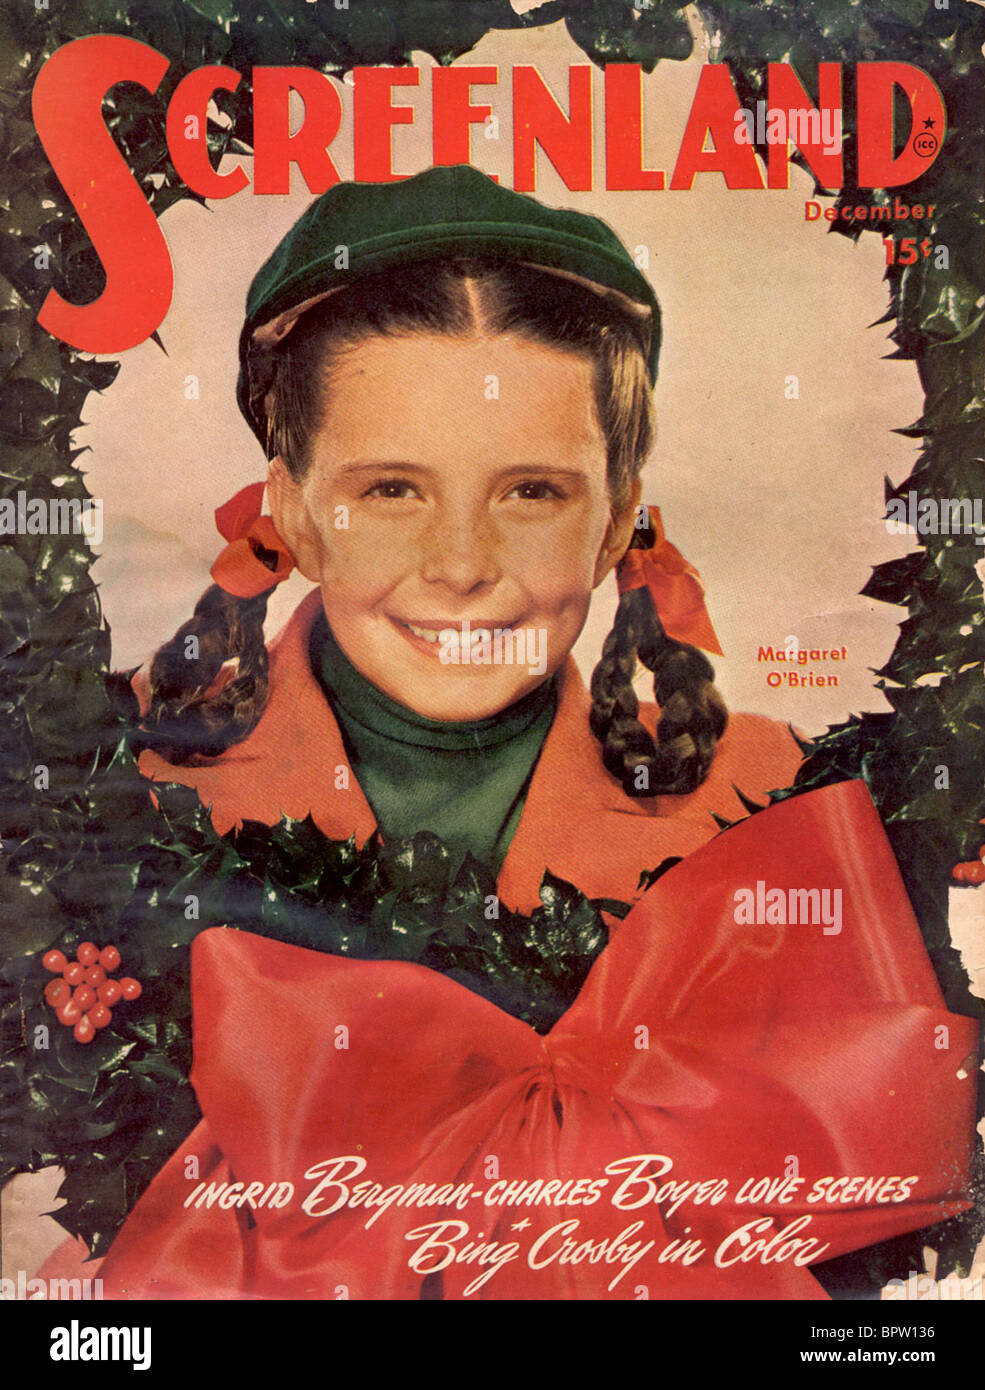 MARGARET O'BRIEN SCREENLAND MAGAZINE COVER (1955) Stock Photo